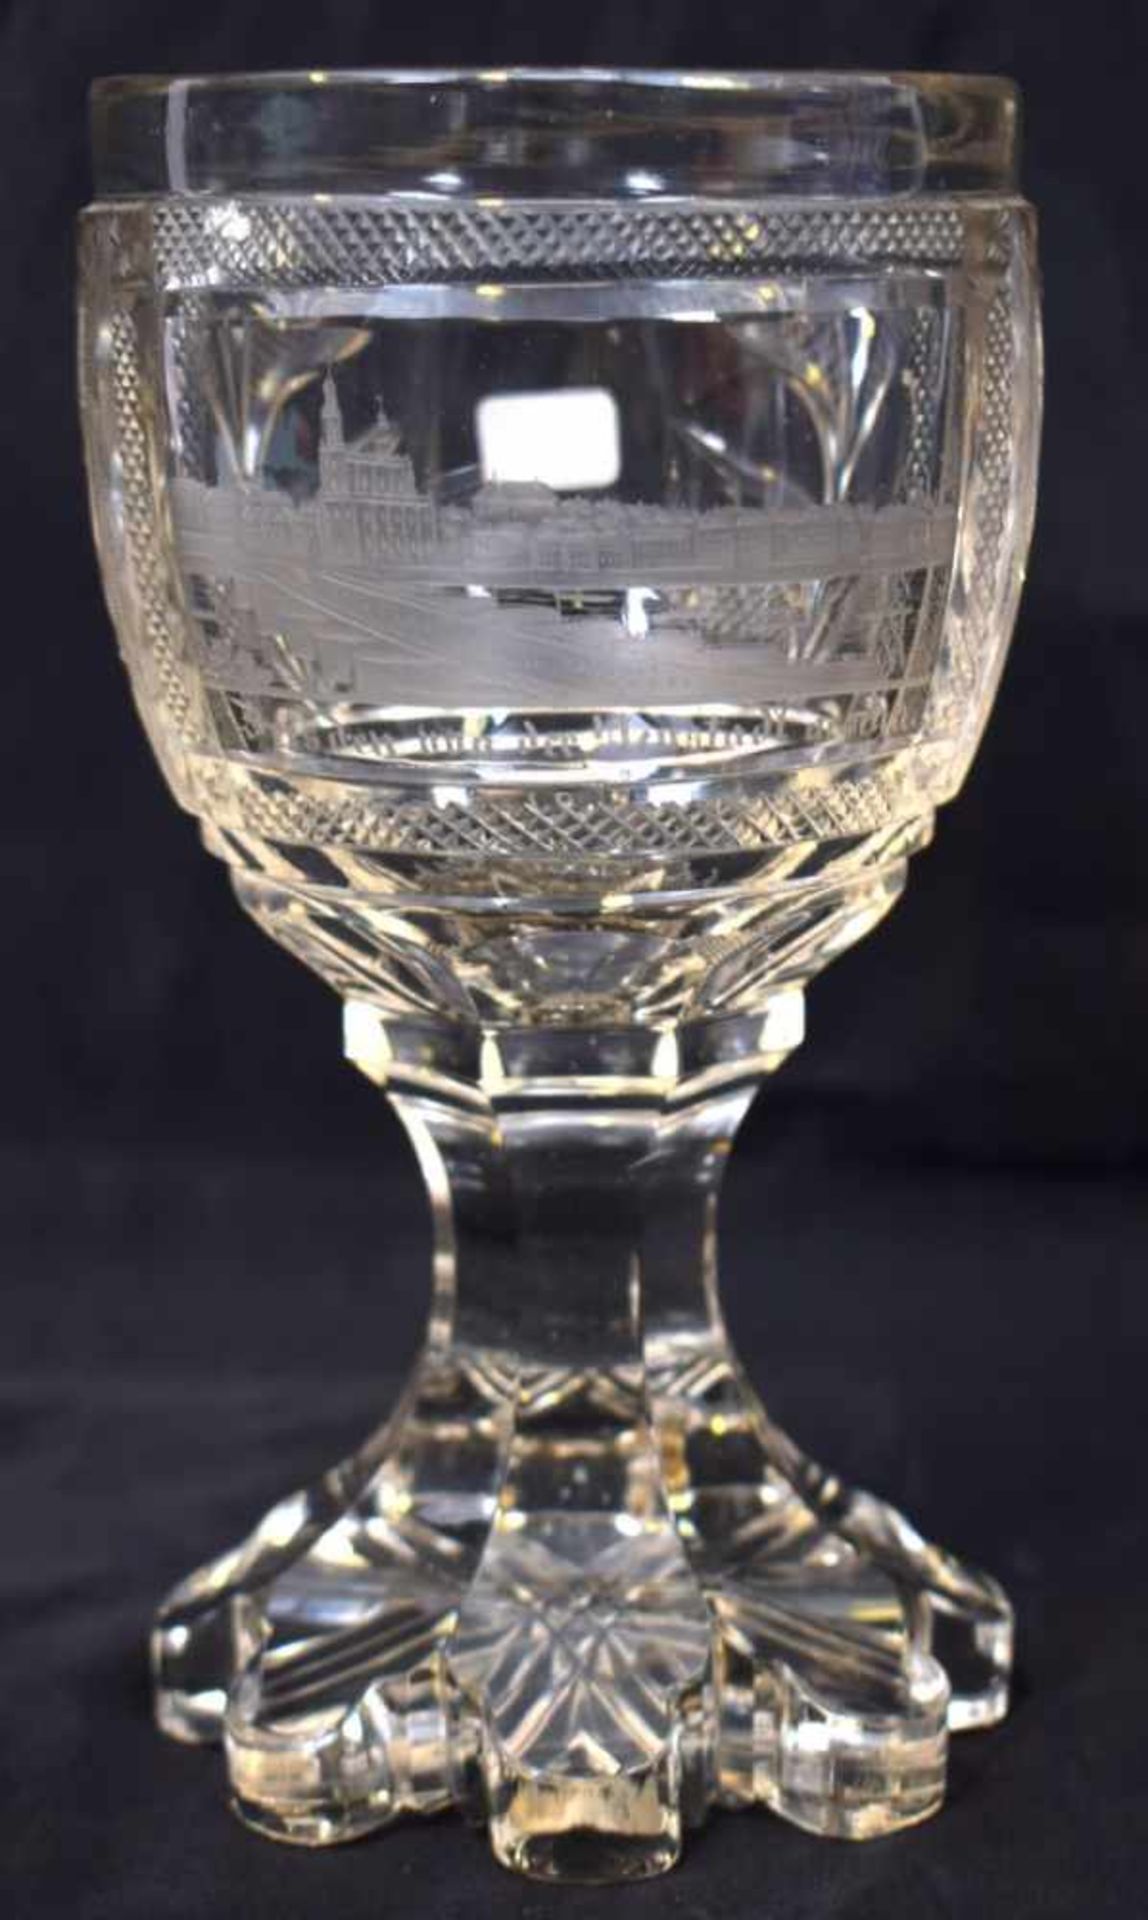 Pokalfarbl. Kristallglas, geschliffen verziert, fächerförmiger Fuß, Kelch mit Medaillon